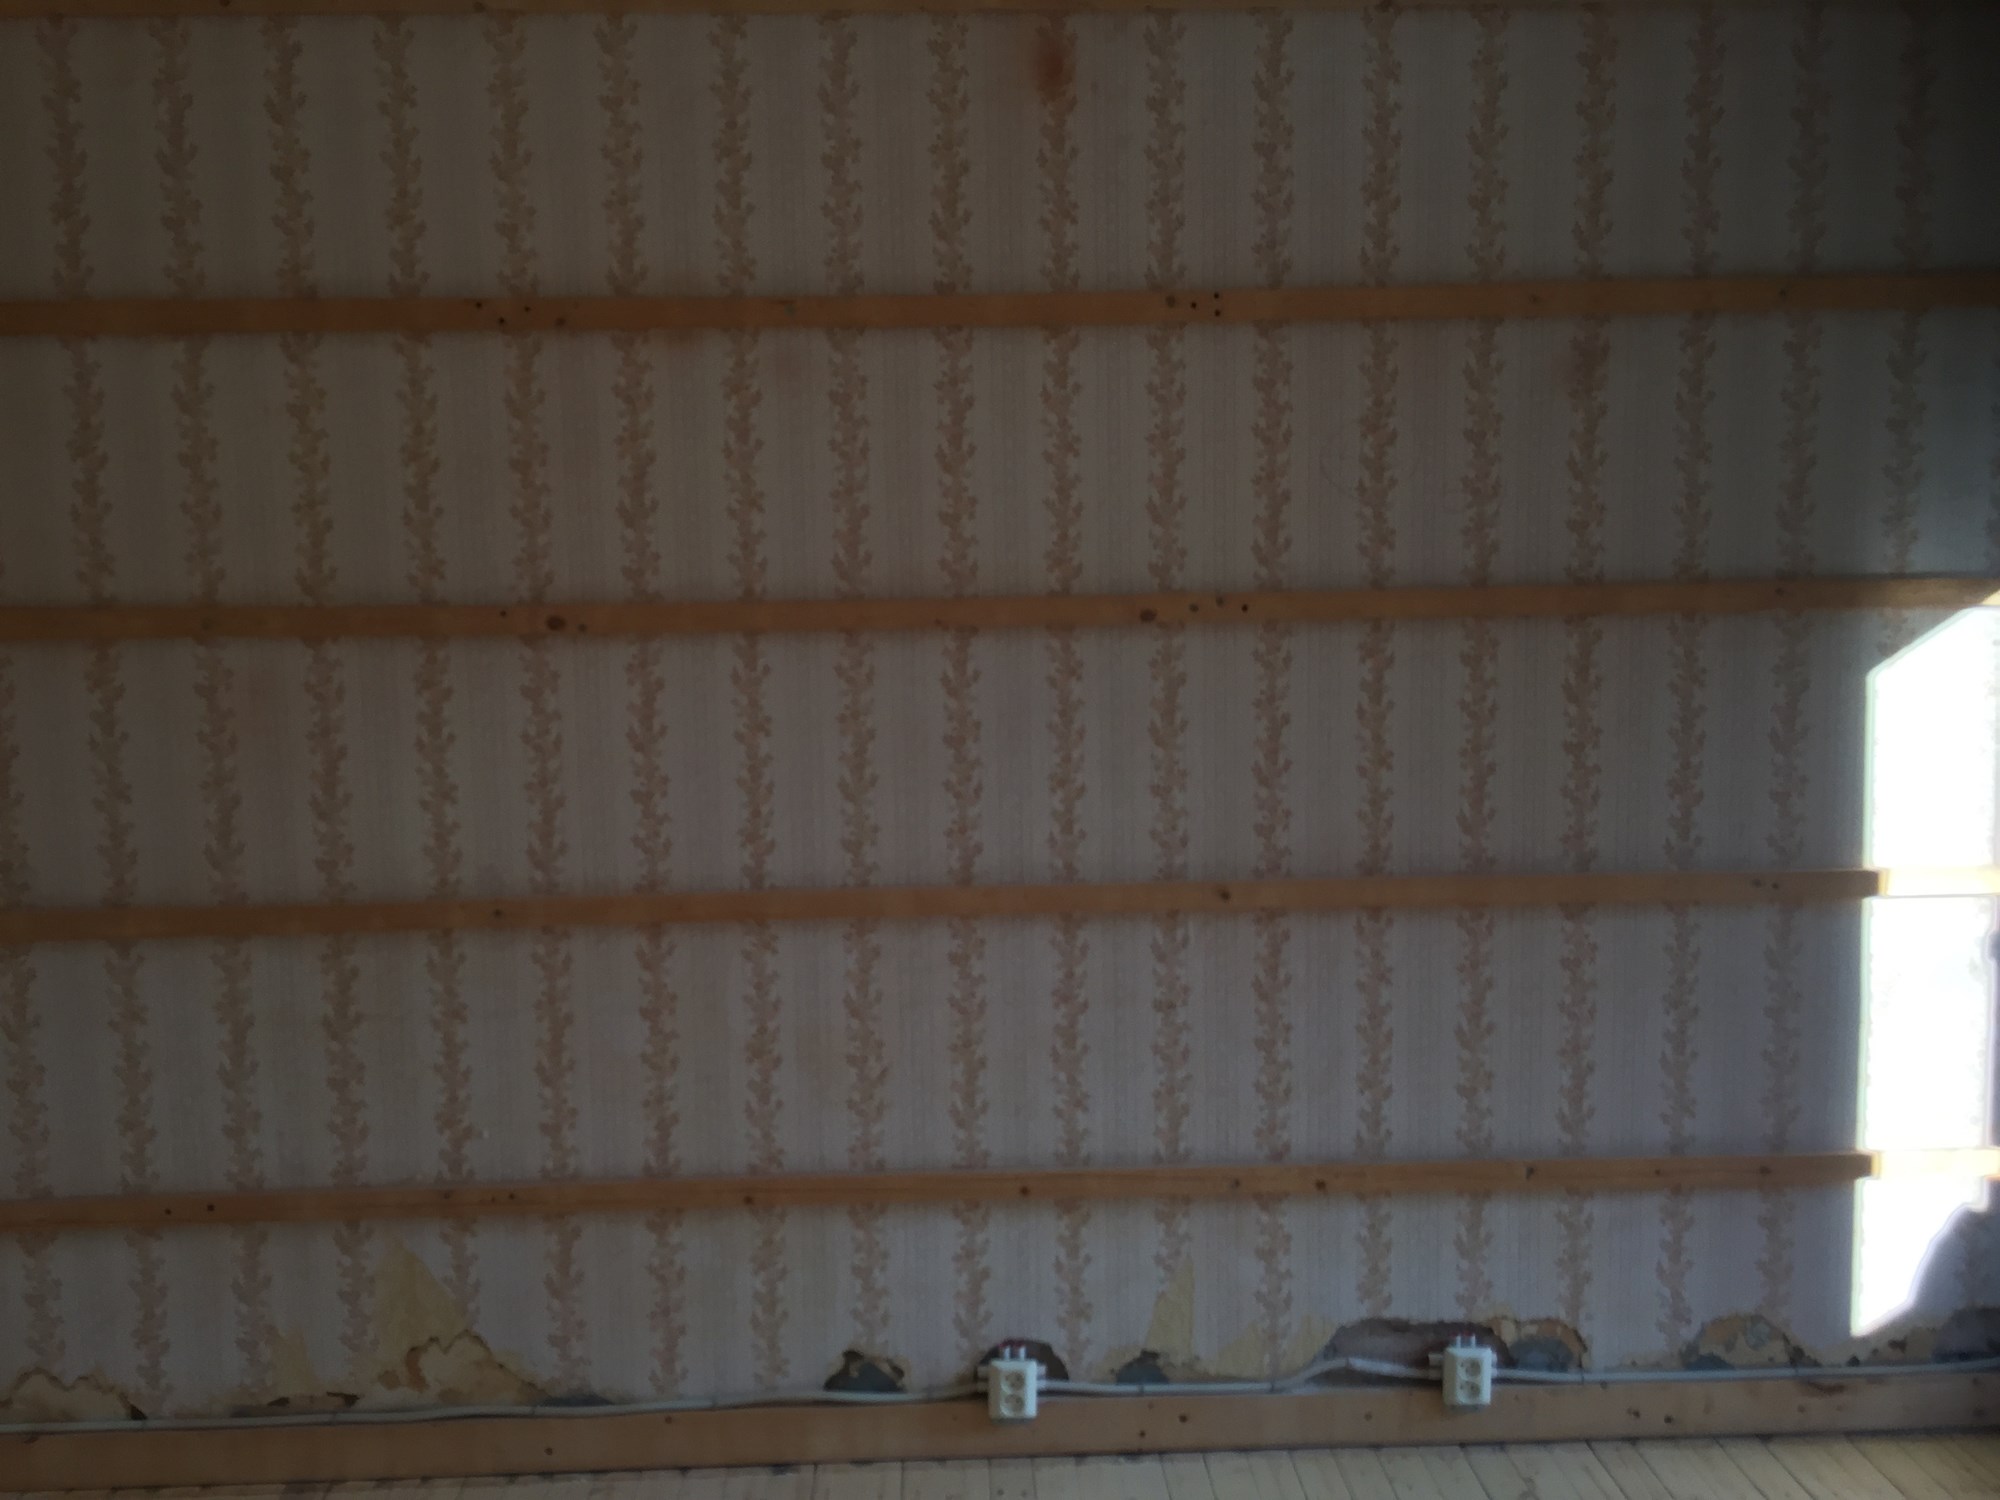 Sparkling og utjevning av vegger i stue - IMG_8400.JPG - Smaskifa